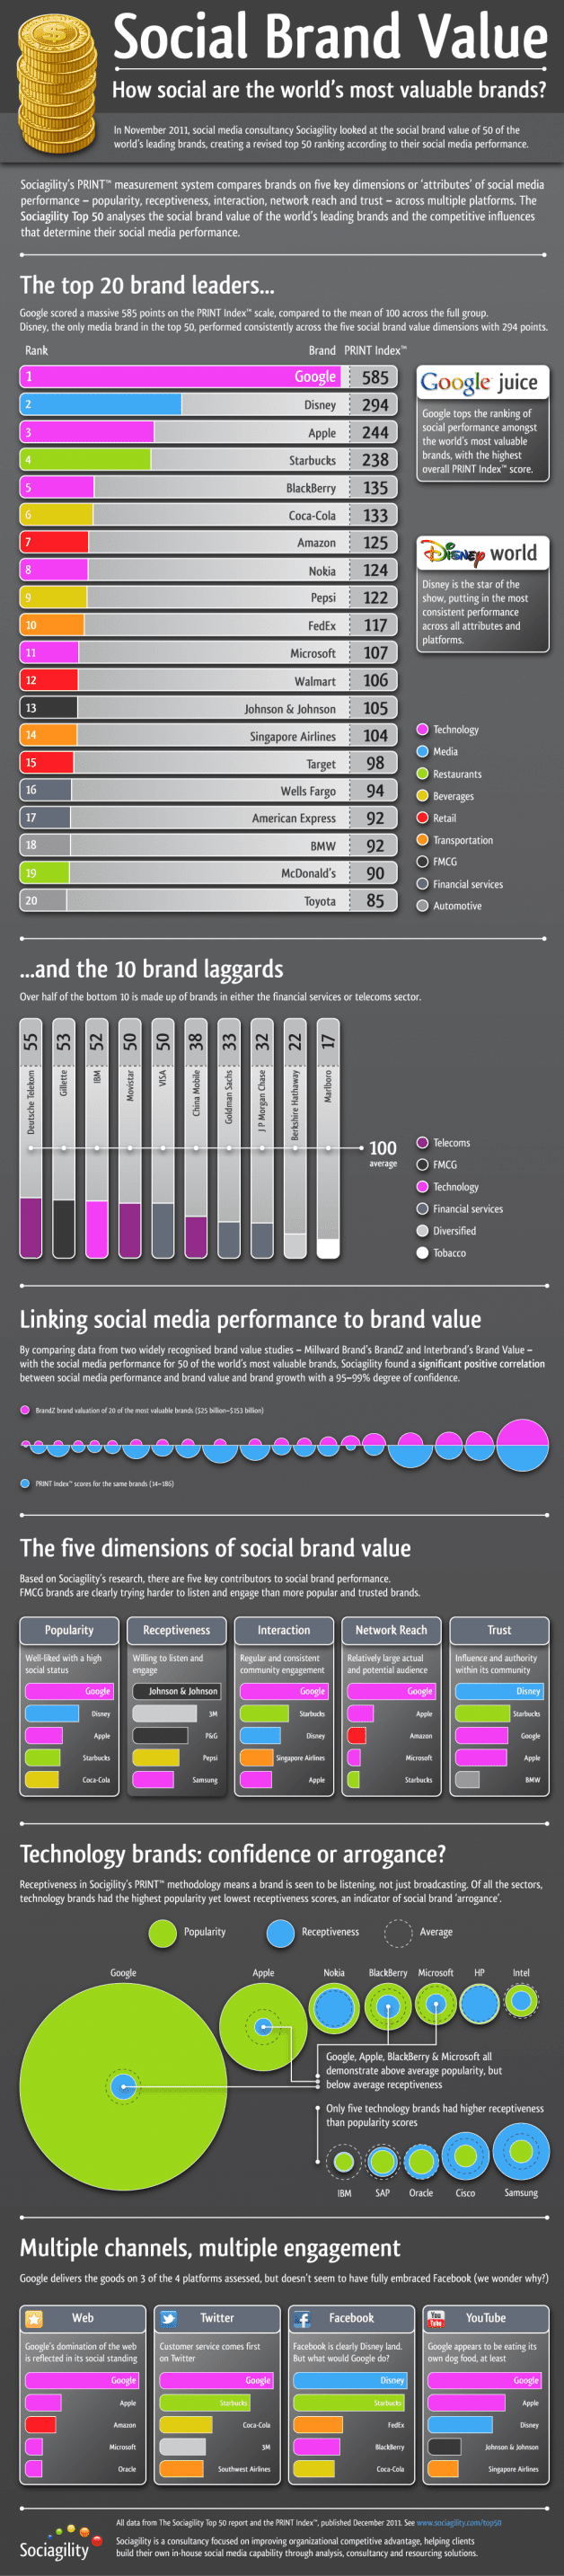 Infografía sobre el valor social de las marcas